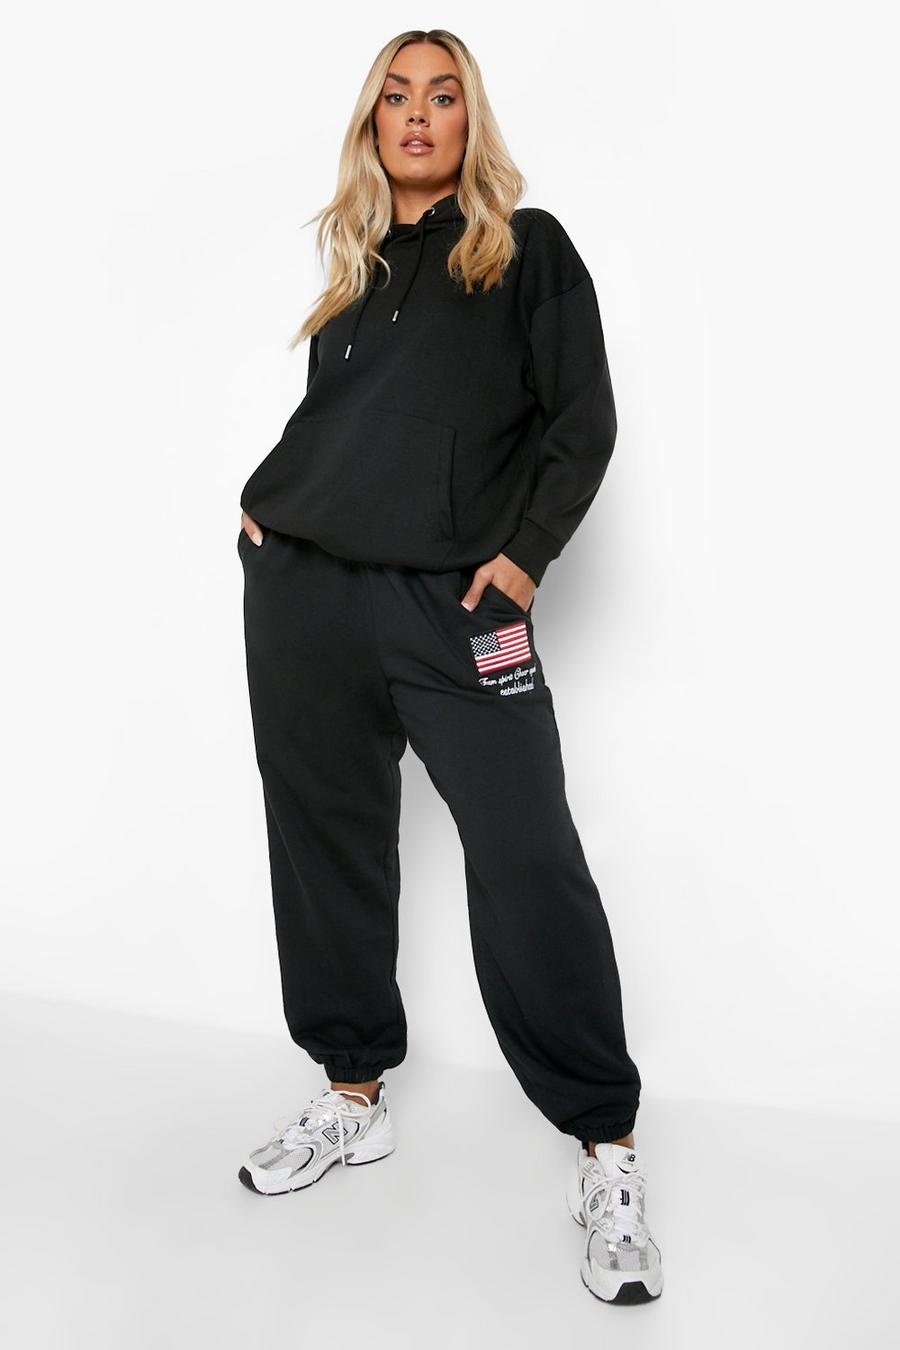 Pantalón deportivo Plus oversize Official con bordado, Black negro